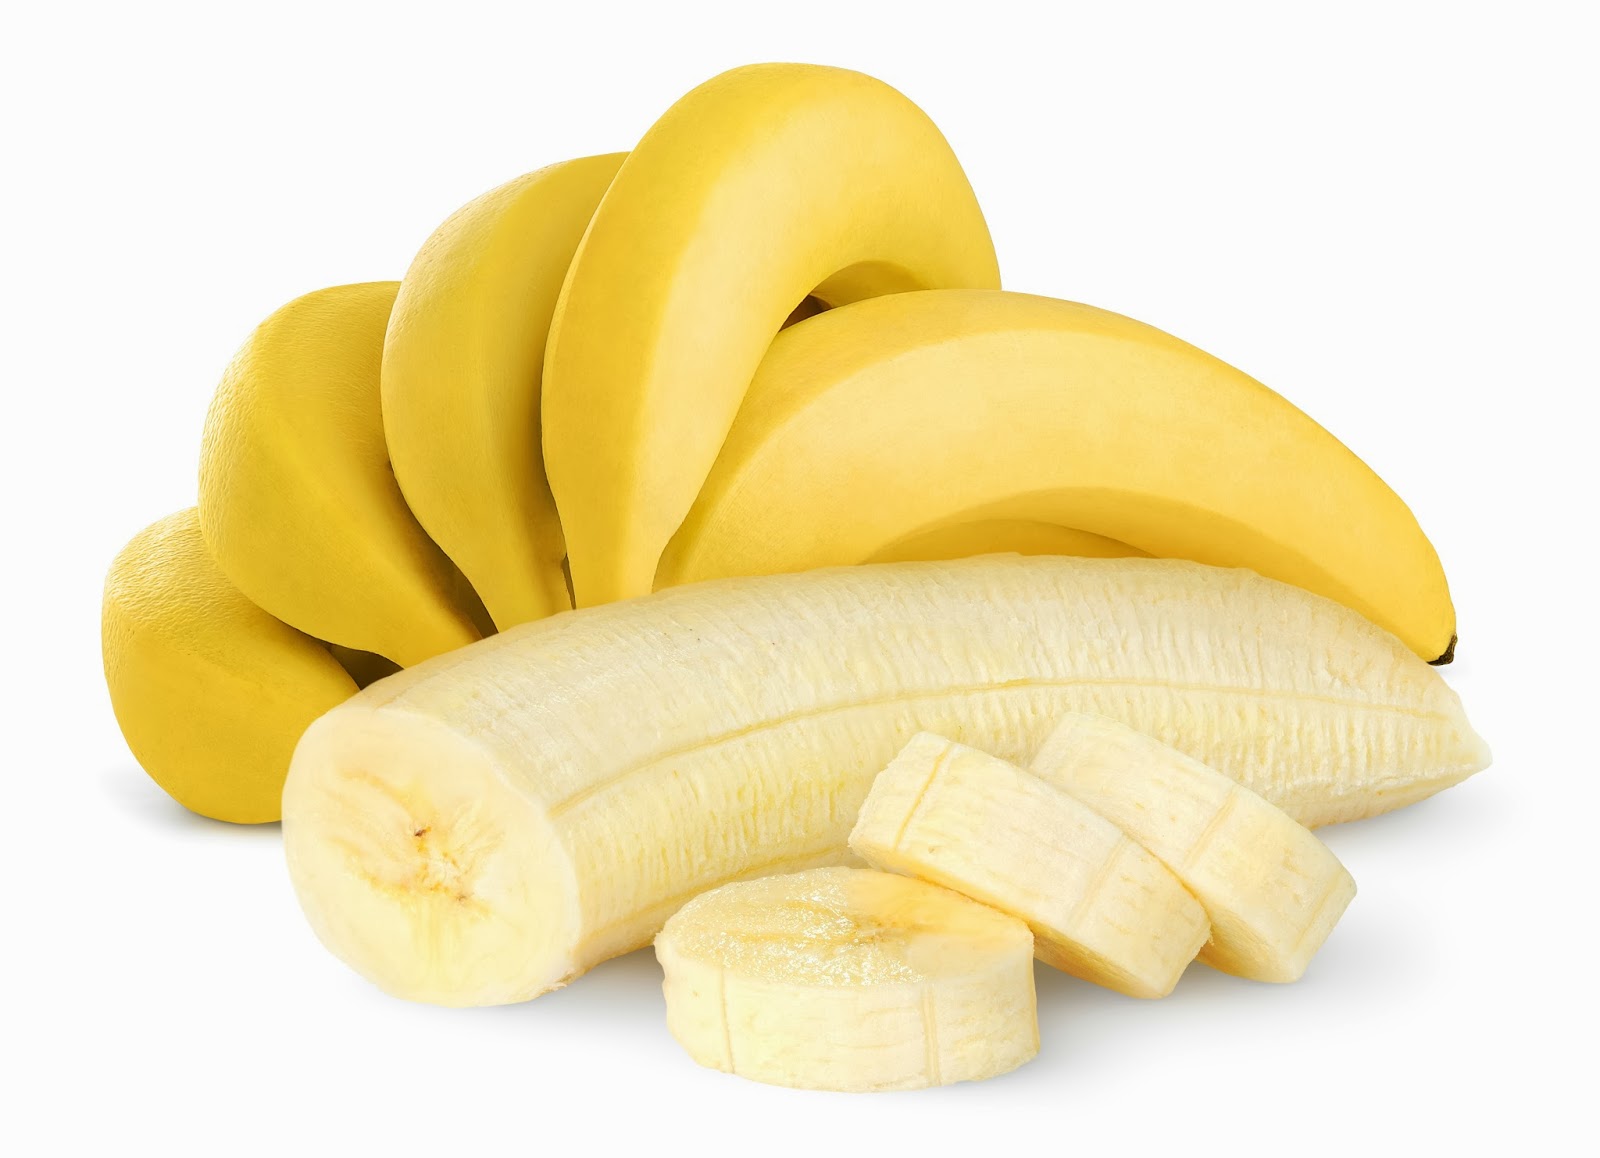 Chuối là trái cây chứa nhiều vitamin B6, mangan, vitamin C, chất xơ, kali và biotin.  Ảnh minh họa